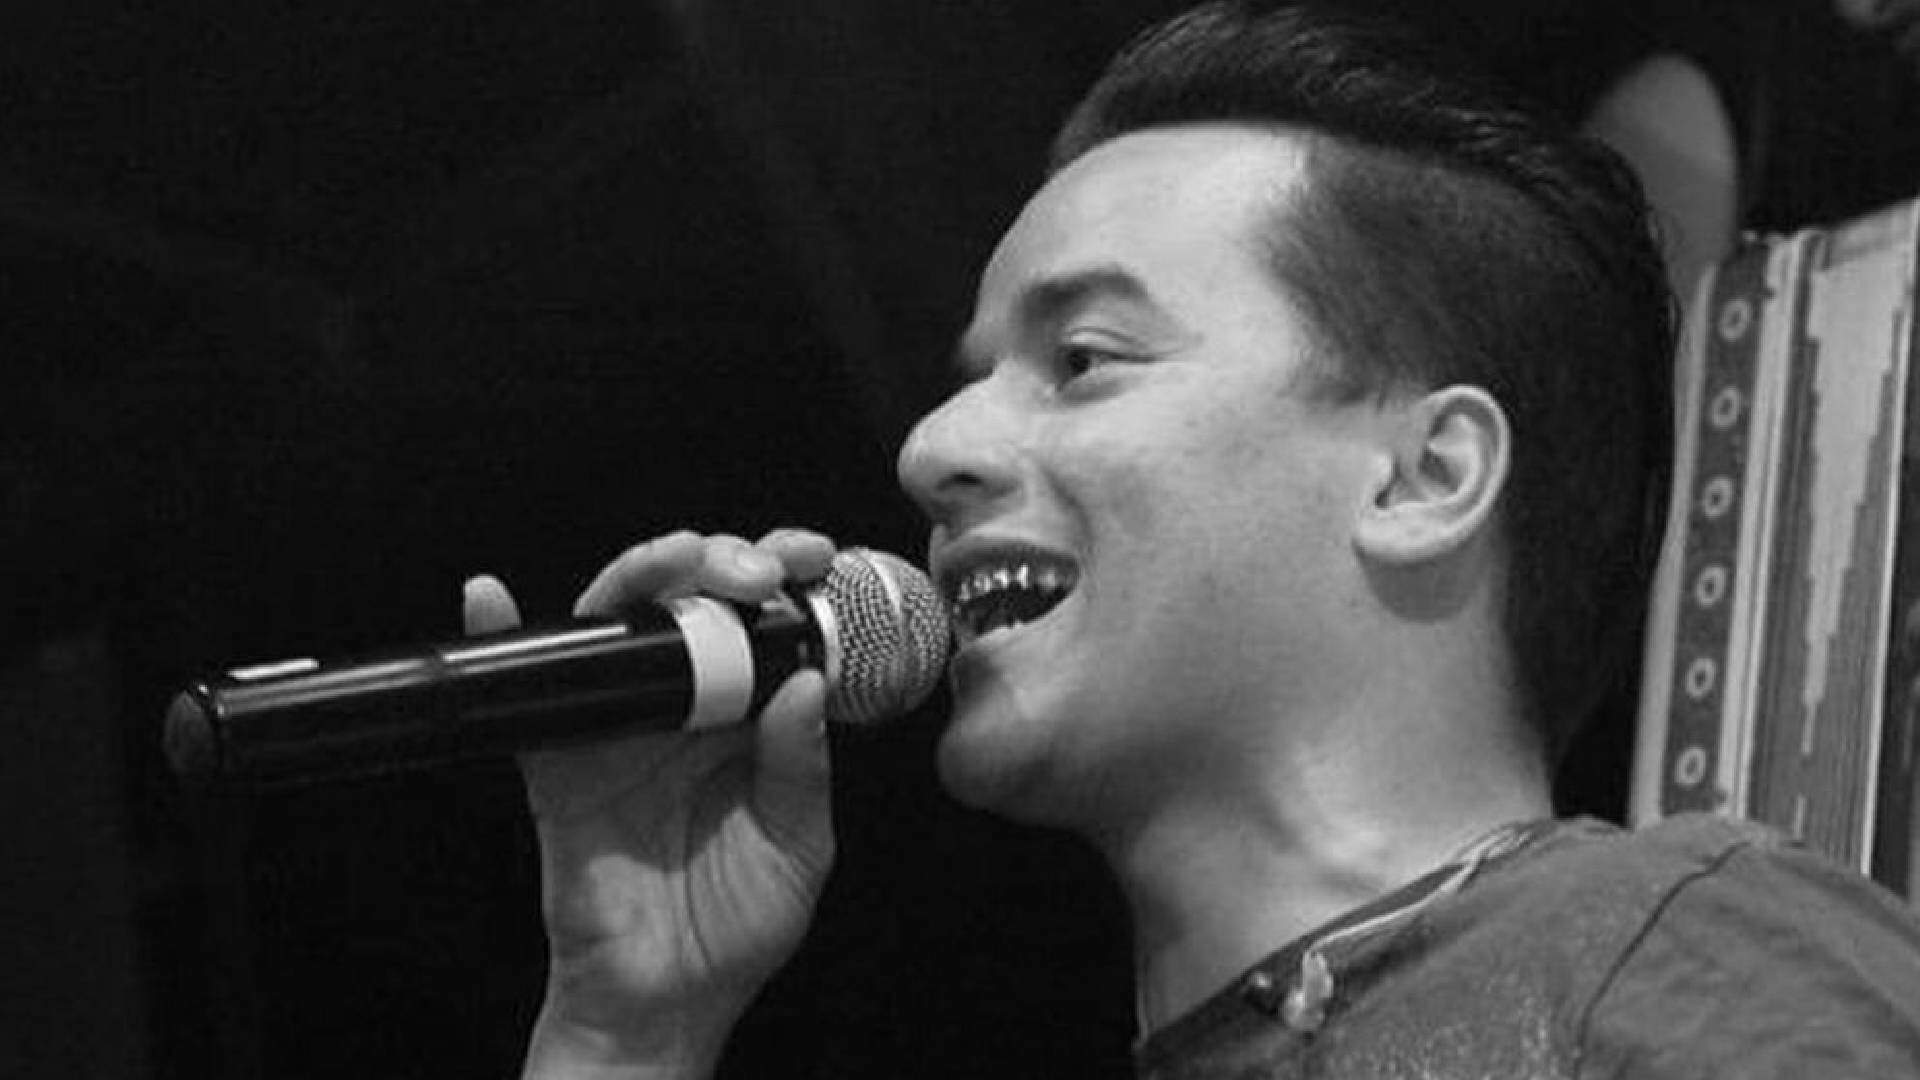 Morte de cantor Yago, dupla com Santhiago, aos 29 anos gera comoção na web - Metropolitana FM